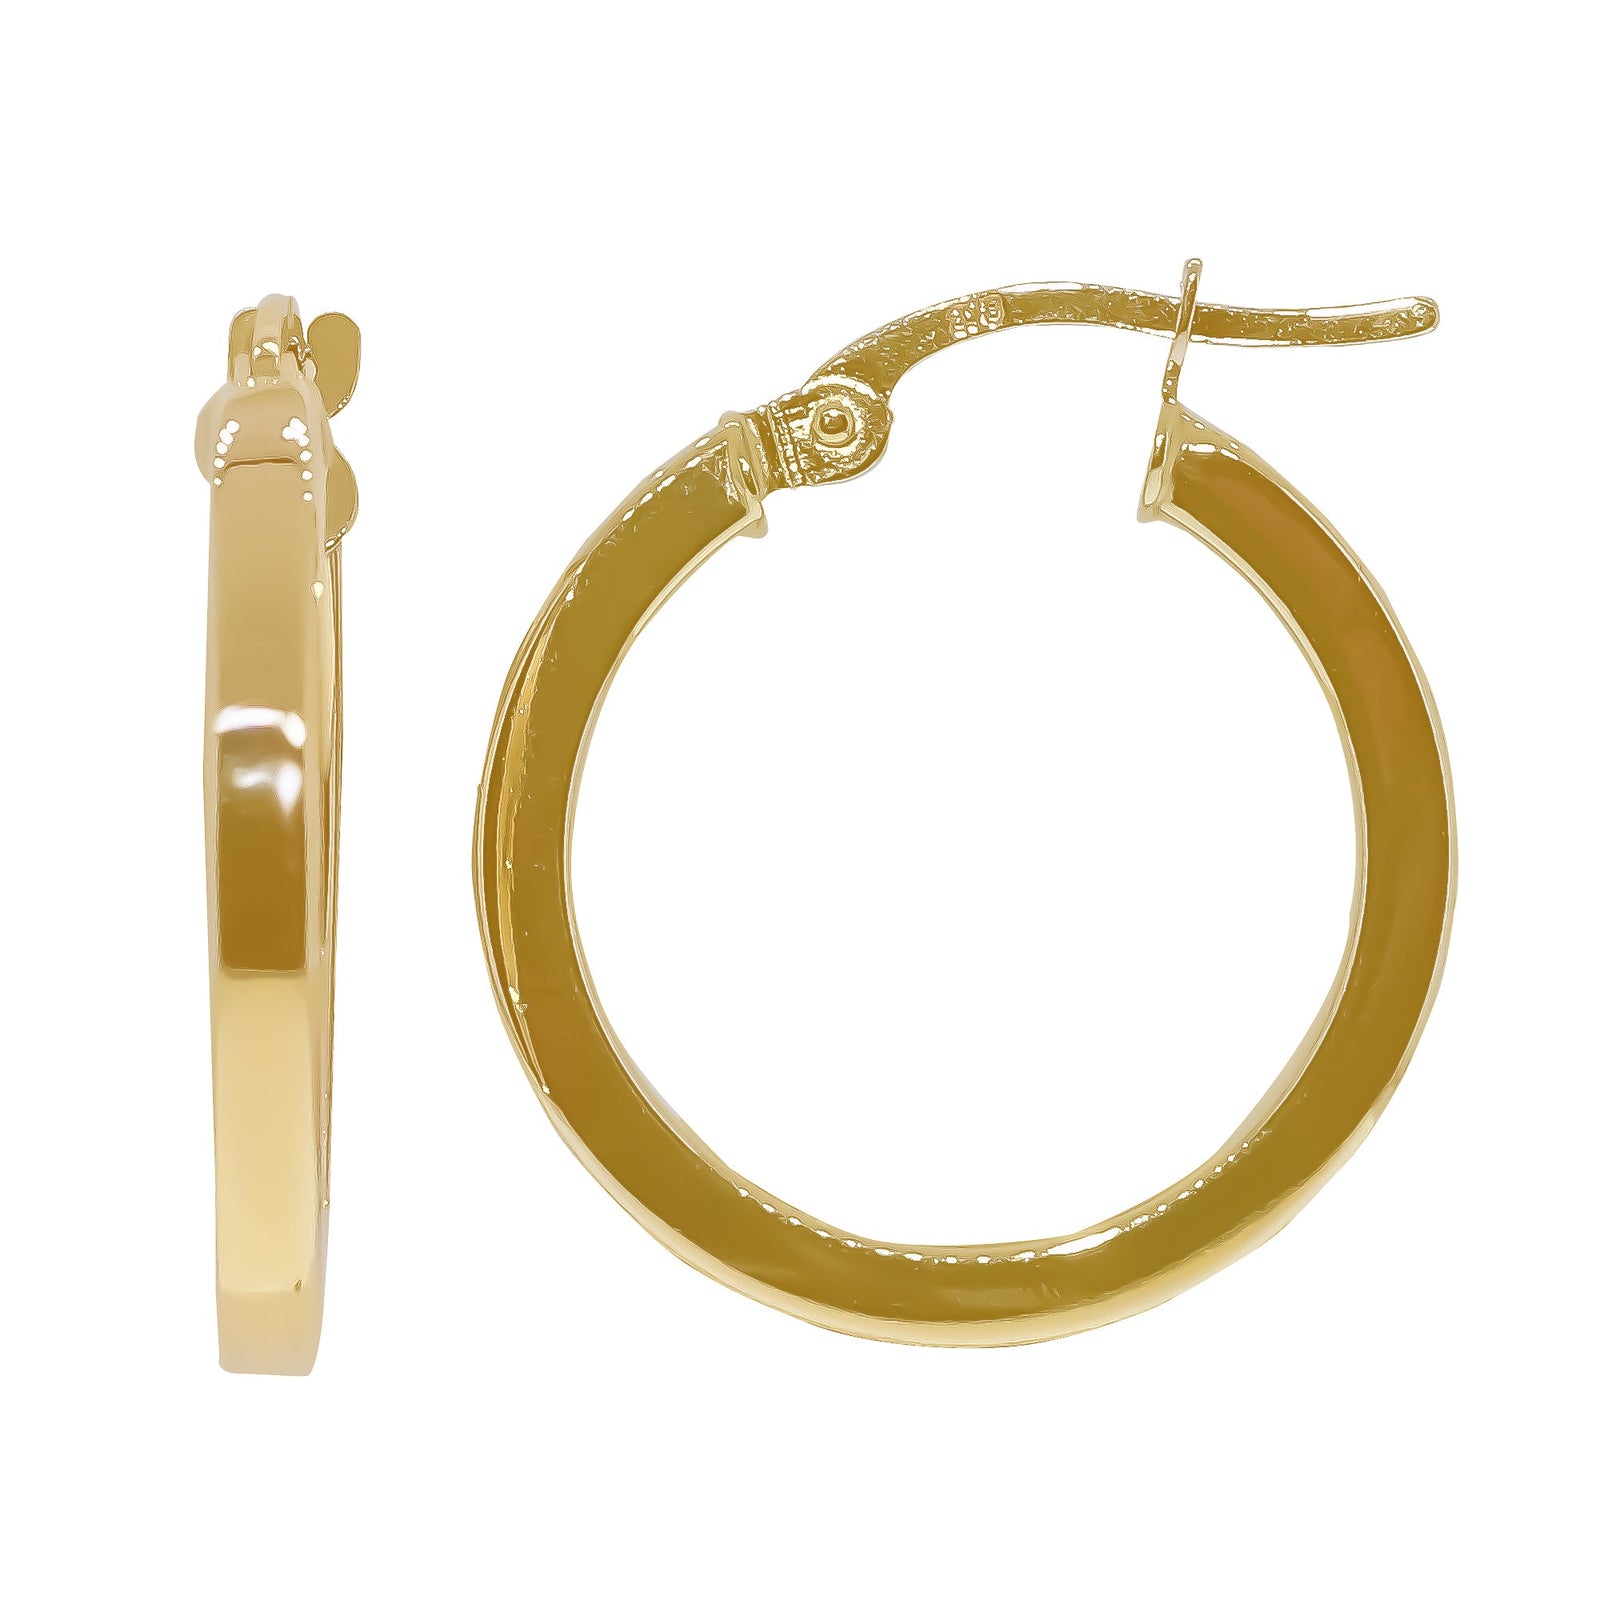 9ct gold 15mm square hoop earrings